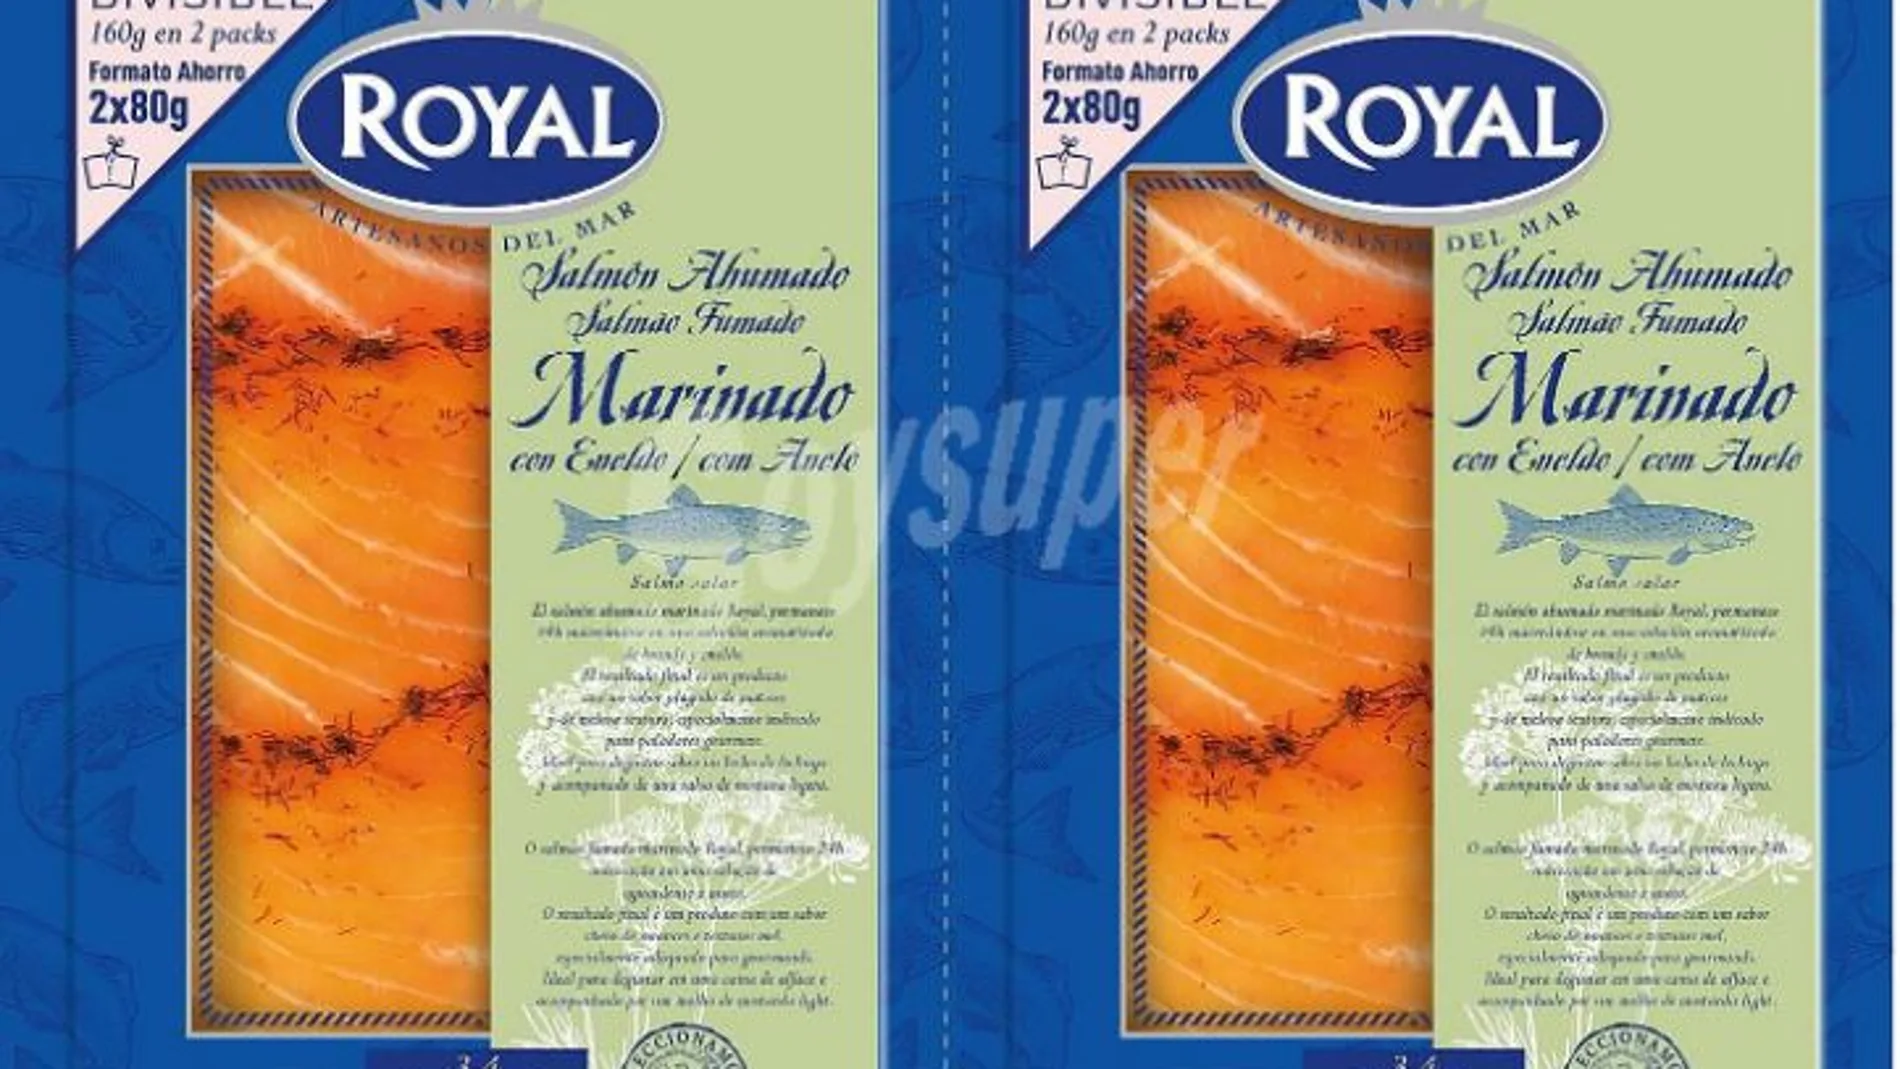 Sanidad no ha confirmado ningún caso asociado al consumo del salmón ahumado marinado con eneldo de 80 gramos, de la marca Royal,